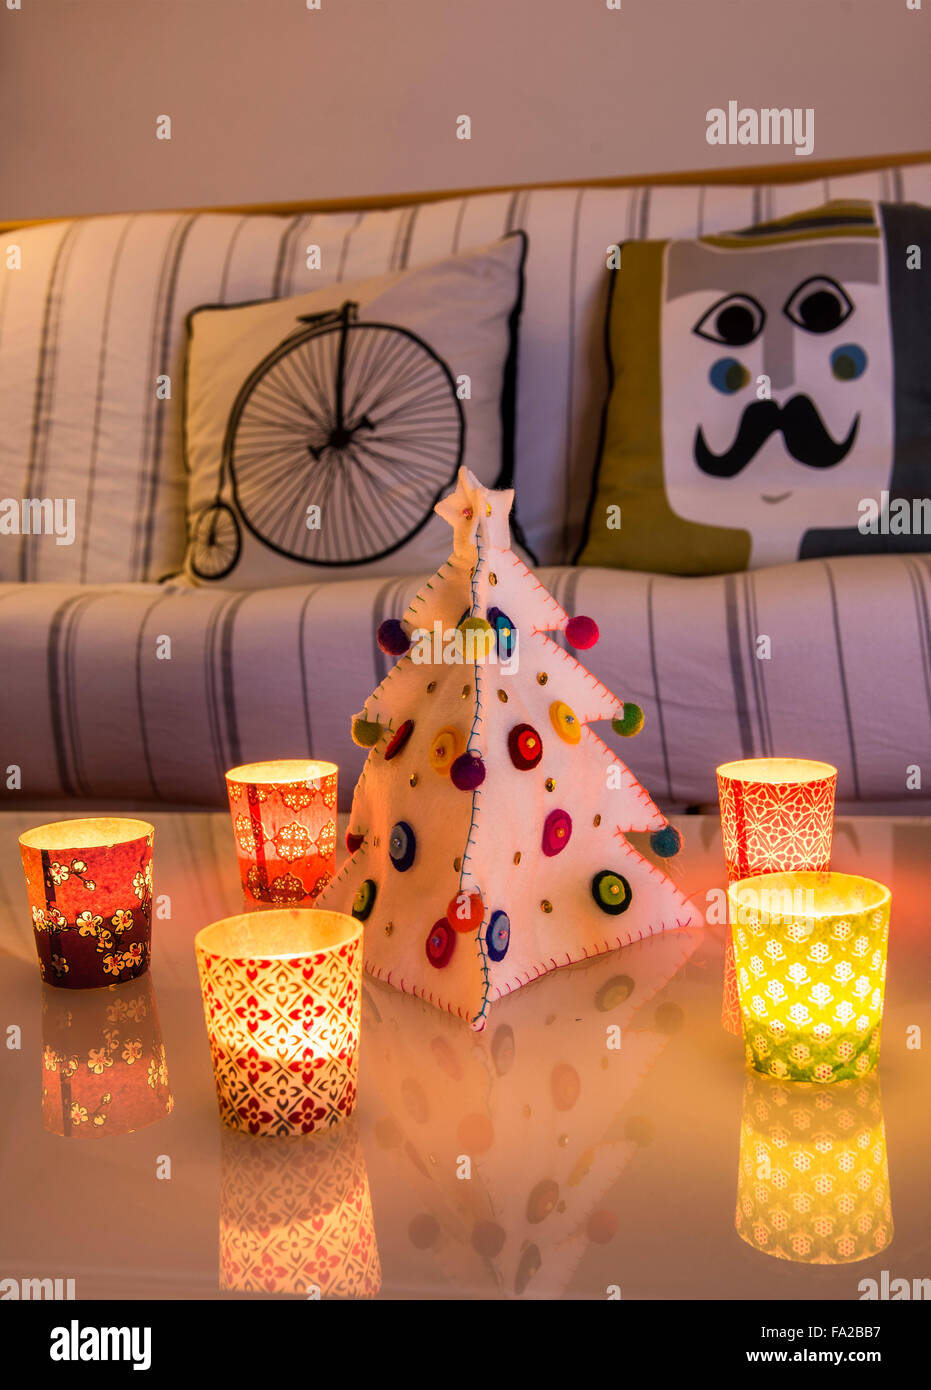 Italien, Chtistmas Atmosphäre in stilvolles Zuhause. Kleine Kerzen auf dem Tisch und einen Weihnachtsbaum vom Tuch gebildet Stockfoto